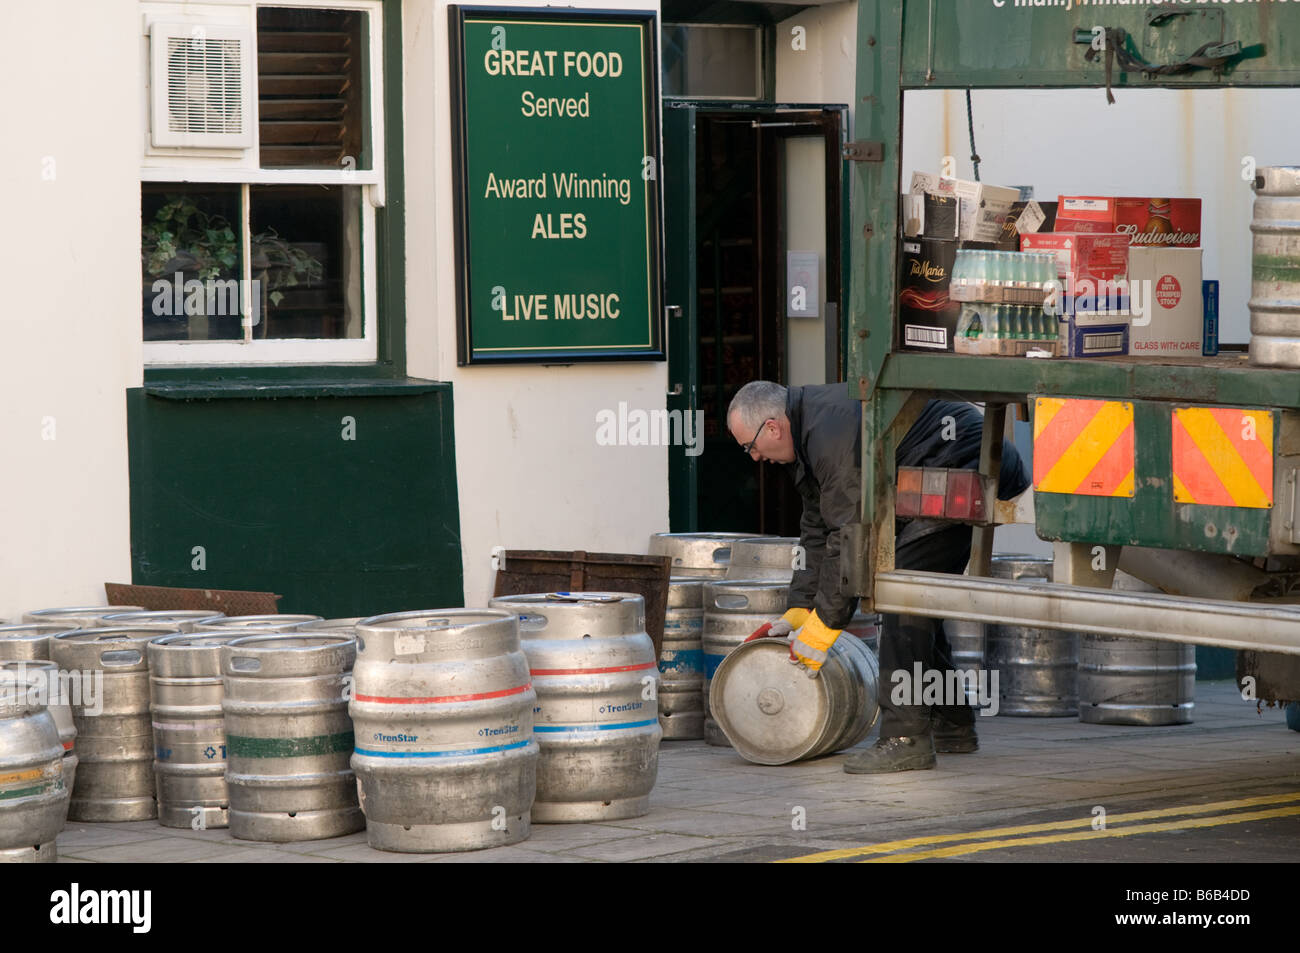 Un homme le roulement d'un fût de bière en fût d'un pub offrant la charge hebdomadaire d'alcool Aberystwyth Wales UK Banque D'Images